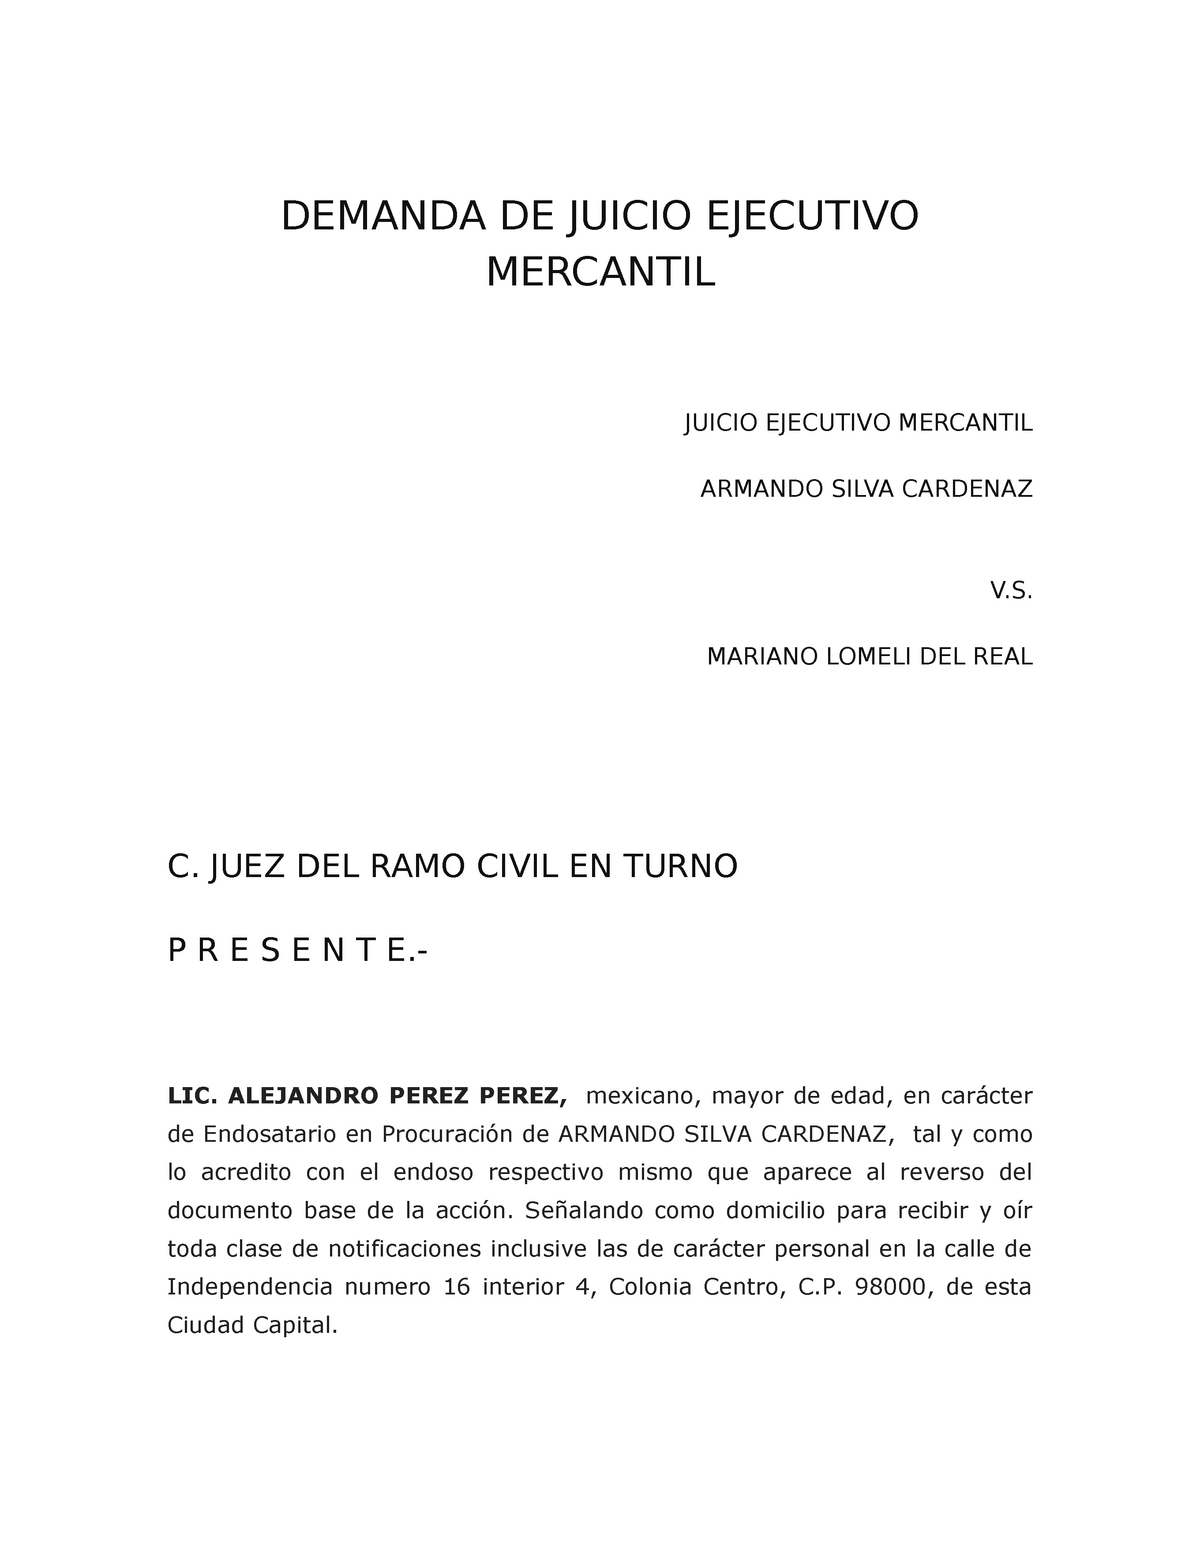 Formato de Juicio ejecutivo mercantil - DEMANDA DE JUICIO EJECUTIVO  MERCANTIL JUICIO EJECUTIVO - Studocu